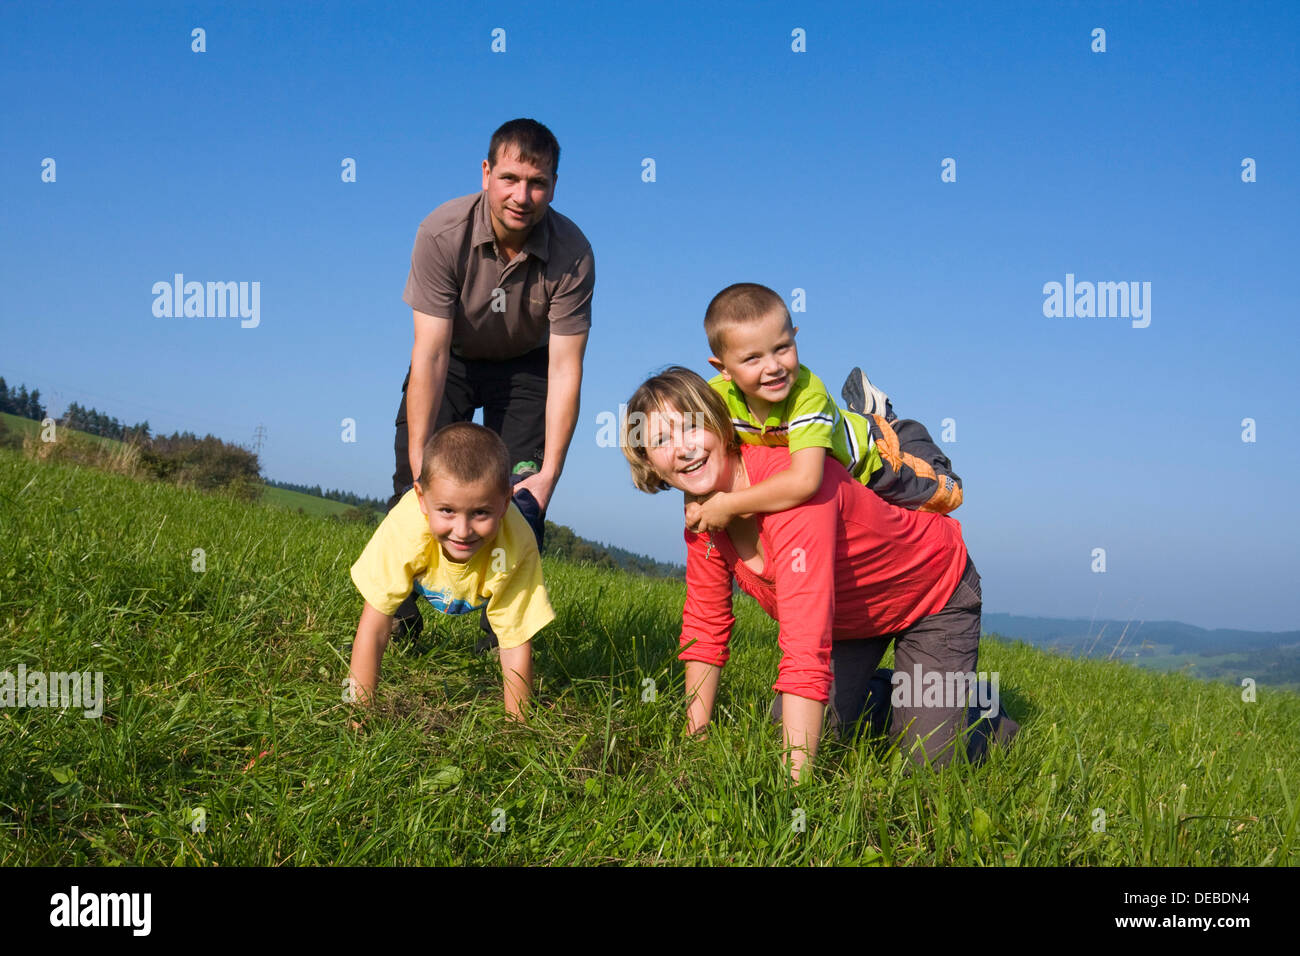 Famiglia, padre, 36 anni, madre, 30 anni, i bambini di 6 e 4 anni, giocando in un prato Foto Stock